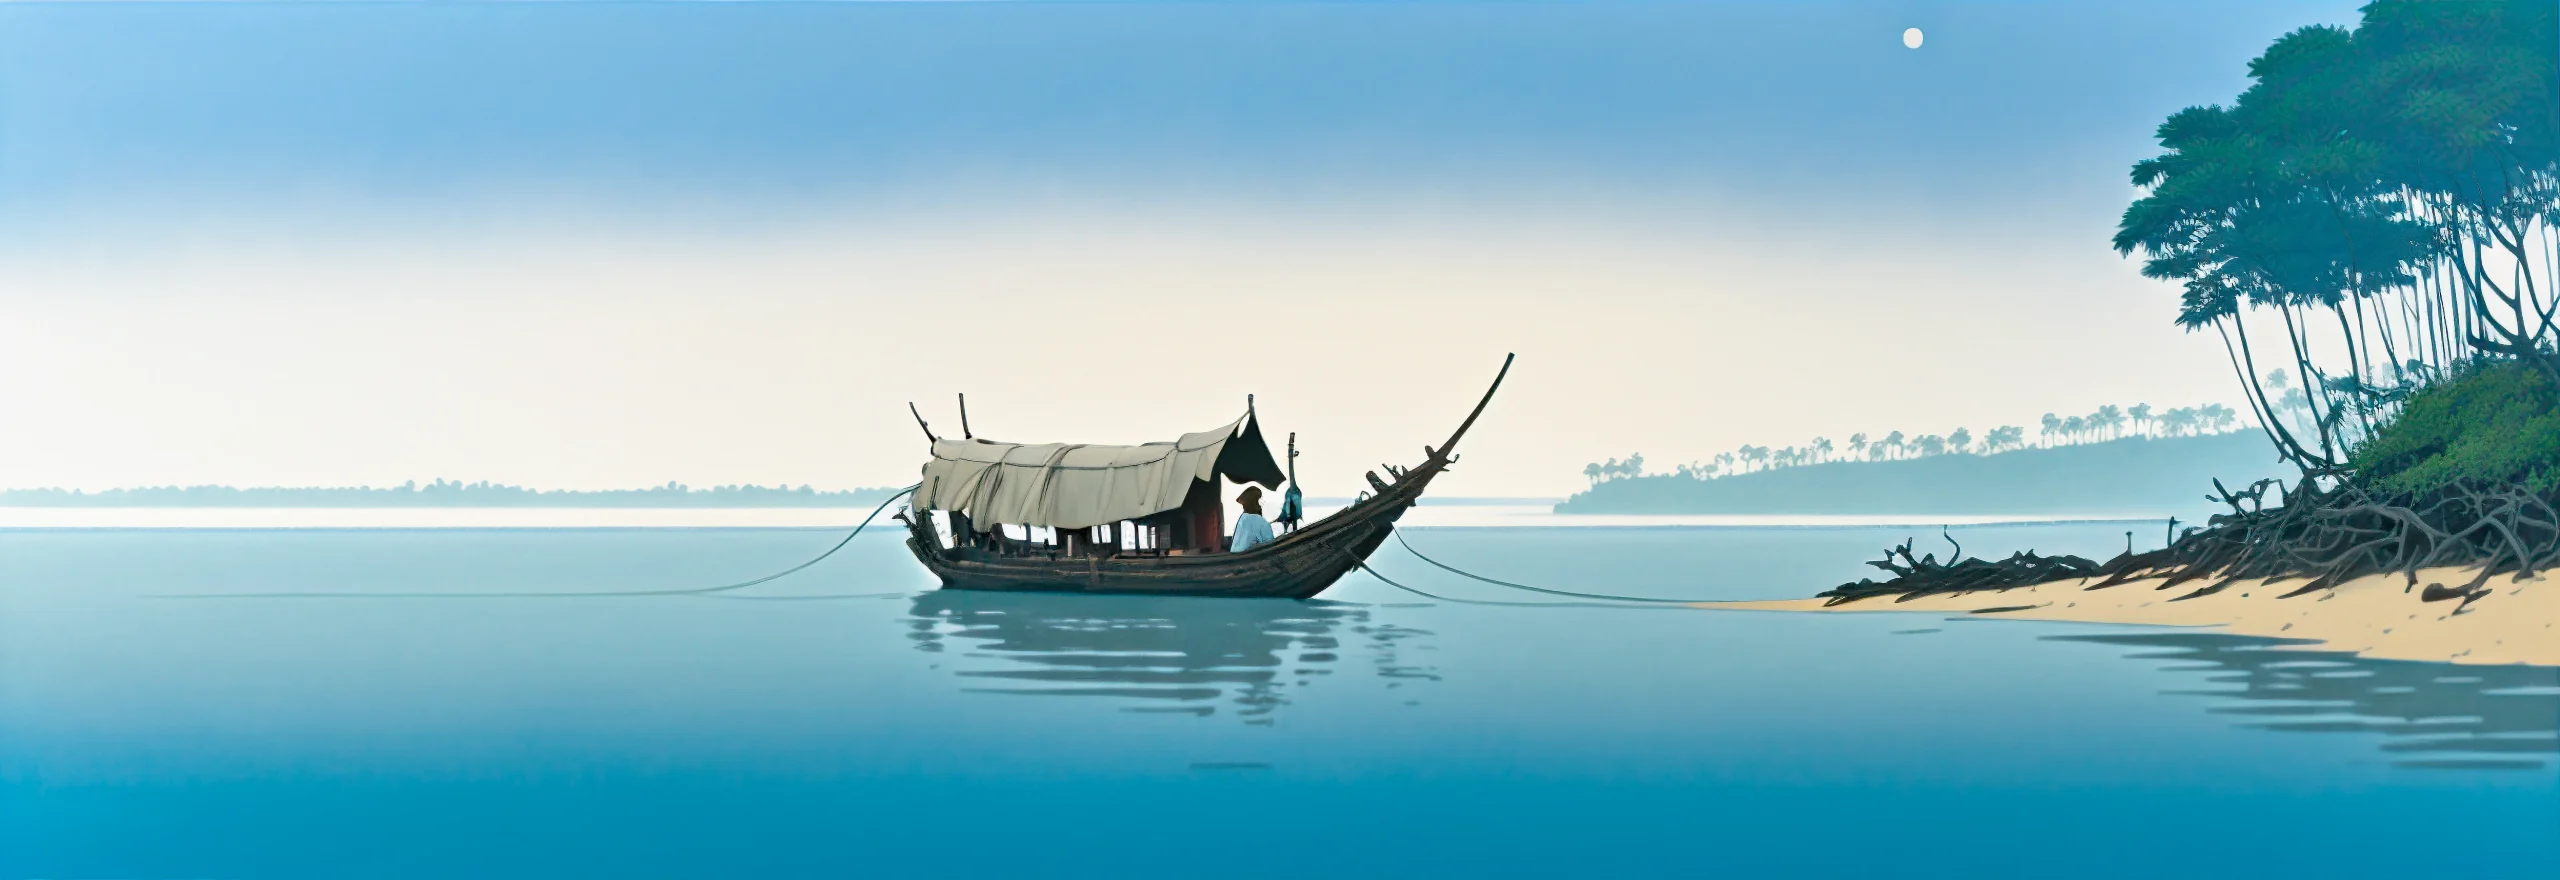 kindows-boat-illustration